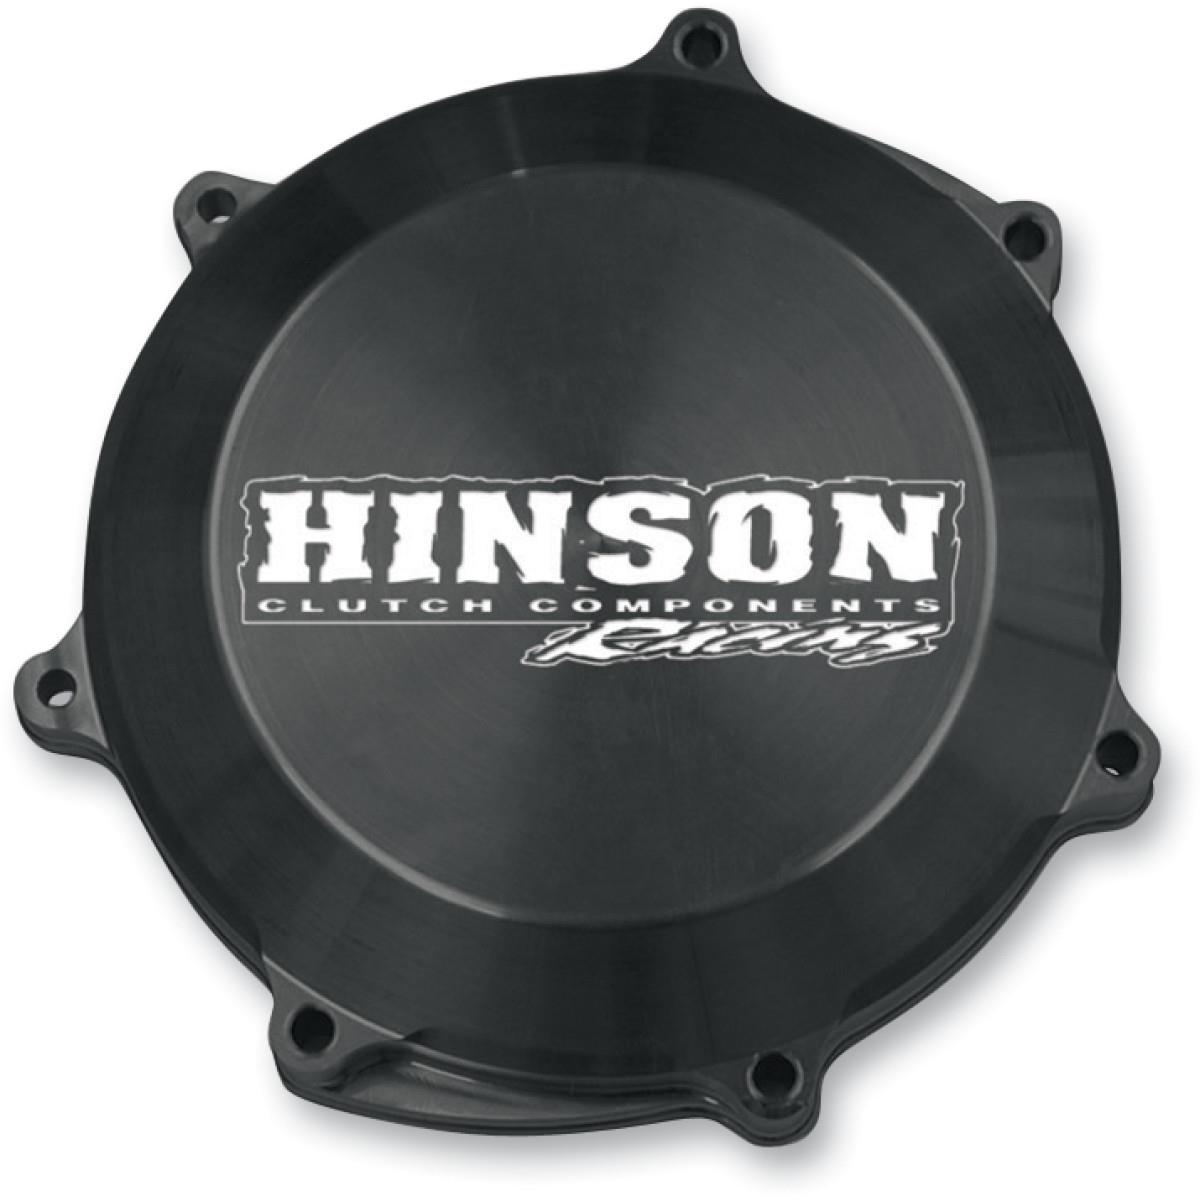 Hinson Kupplungsdeckel Billetproof Yamaha YZ450F 04-09, WR450F 03-15, Gas Gas EC 450F 12-15